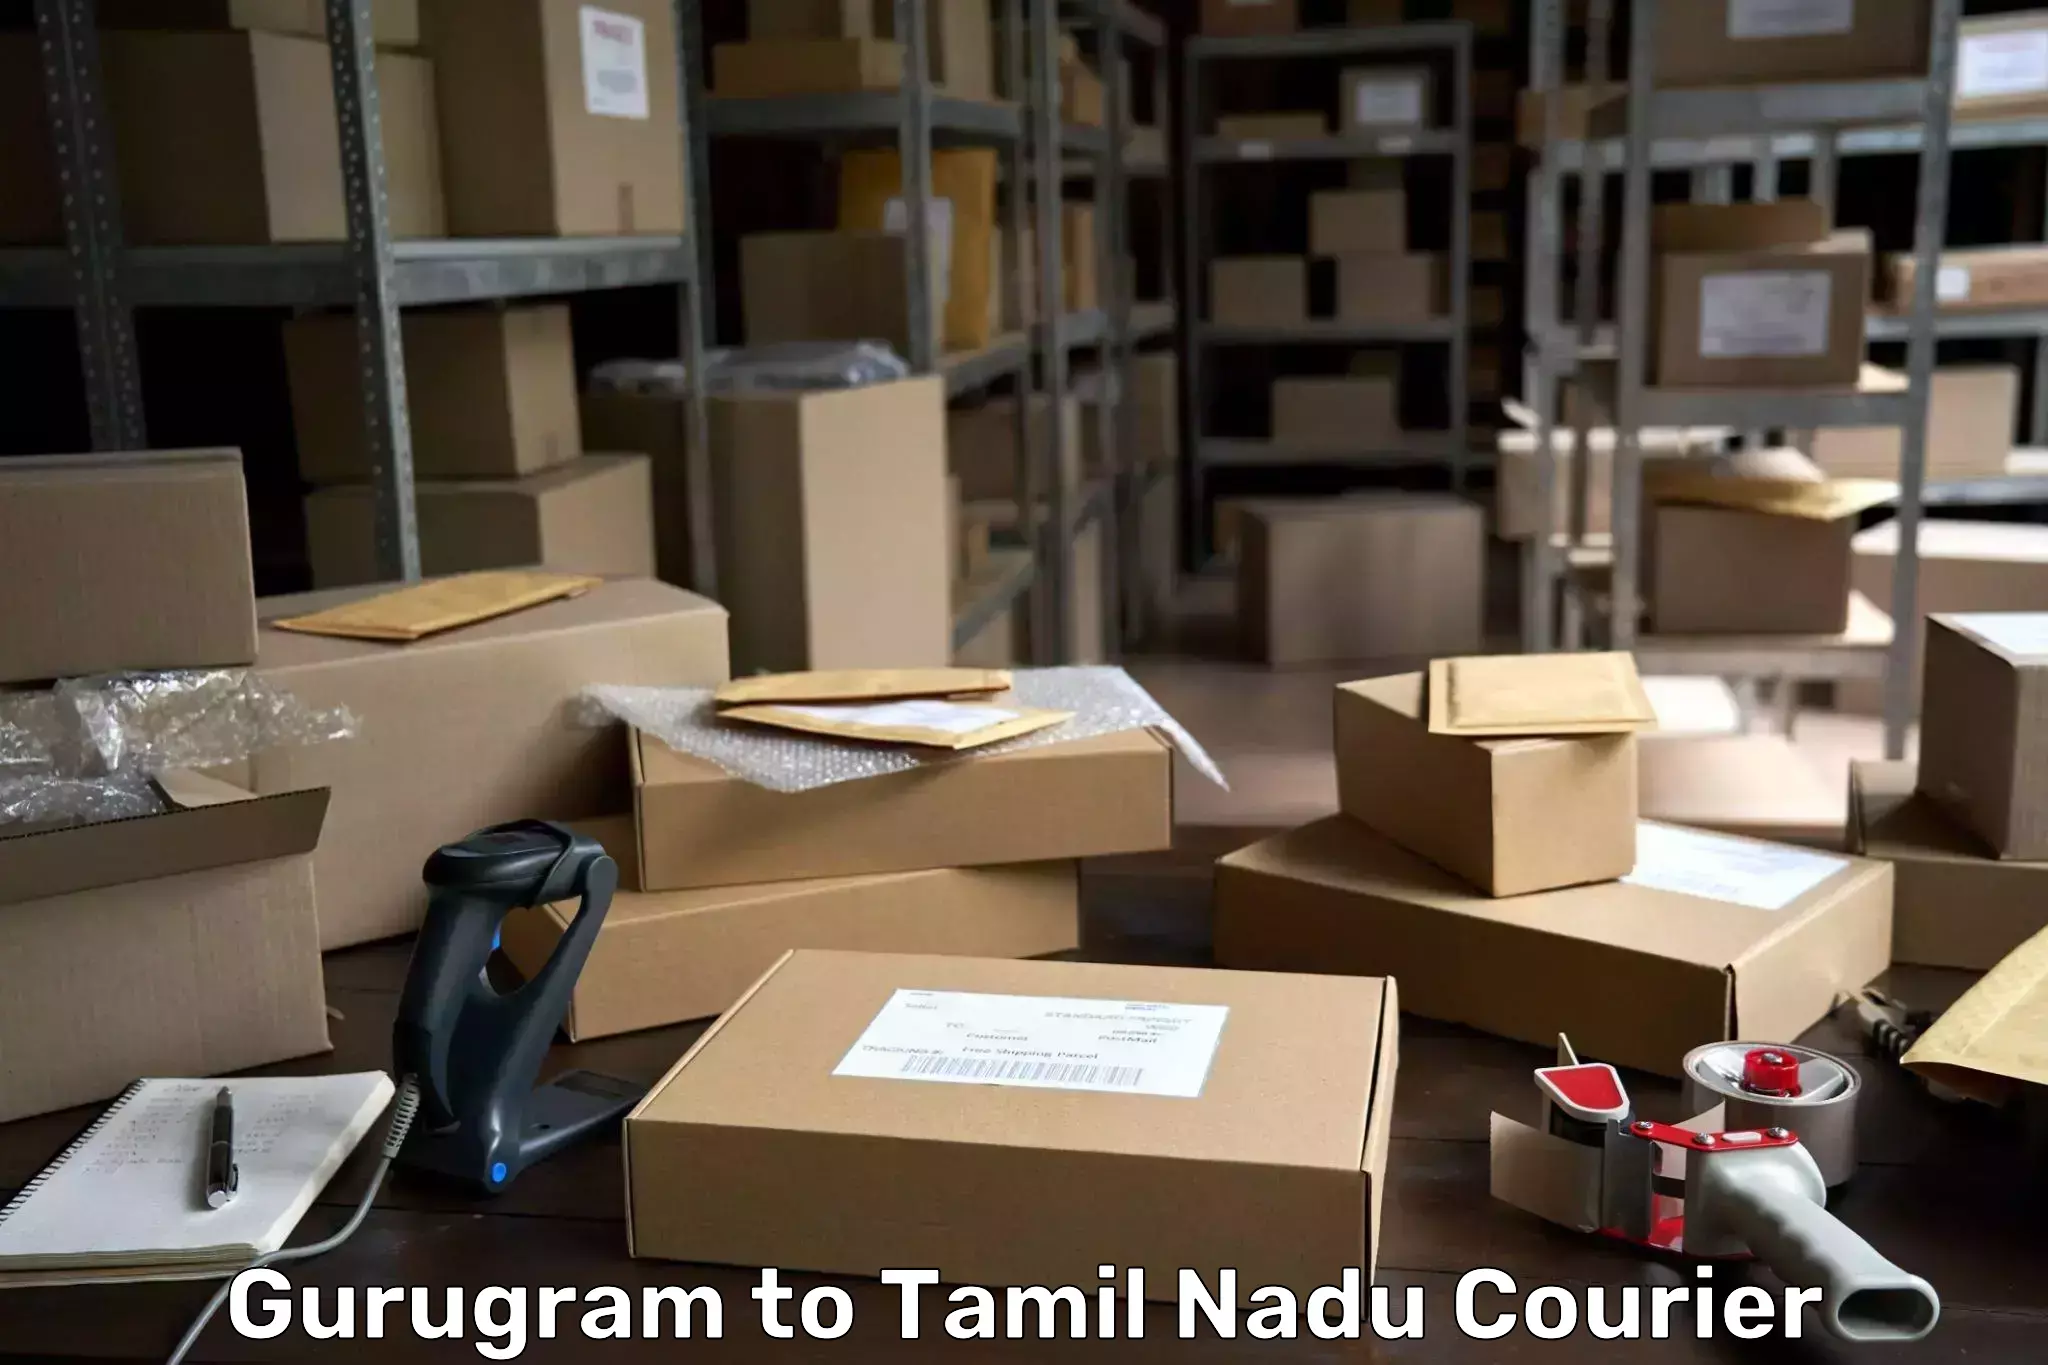 Round-the-clock parcel delivery Gurugram to Tiruchirappalli